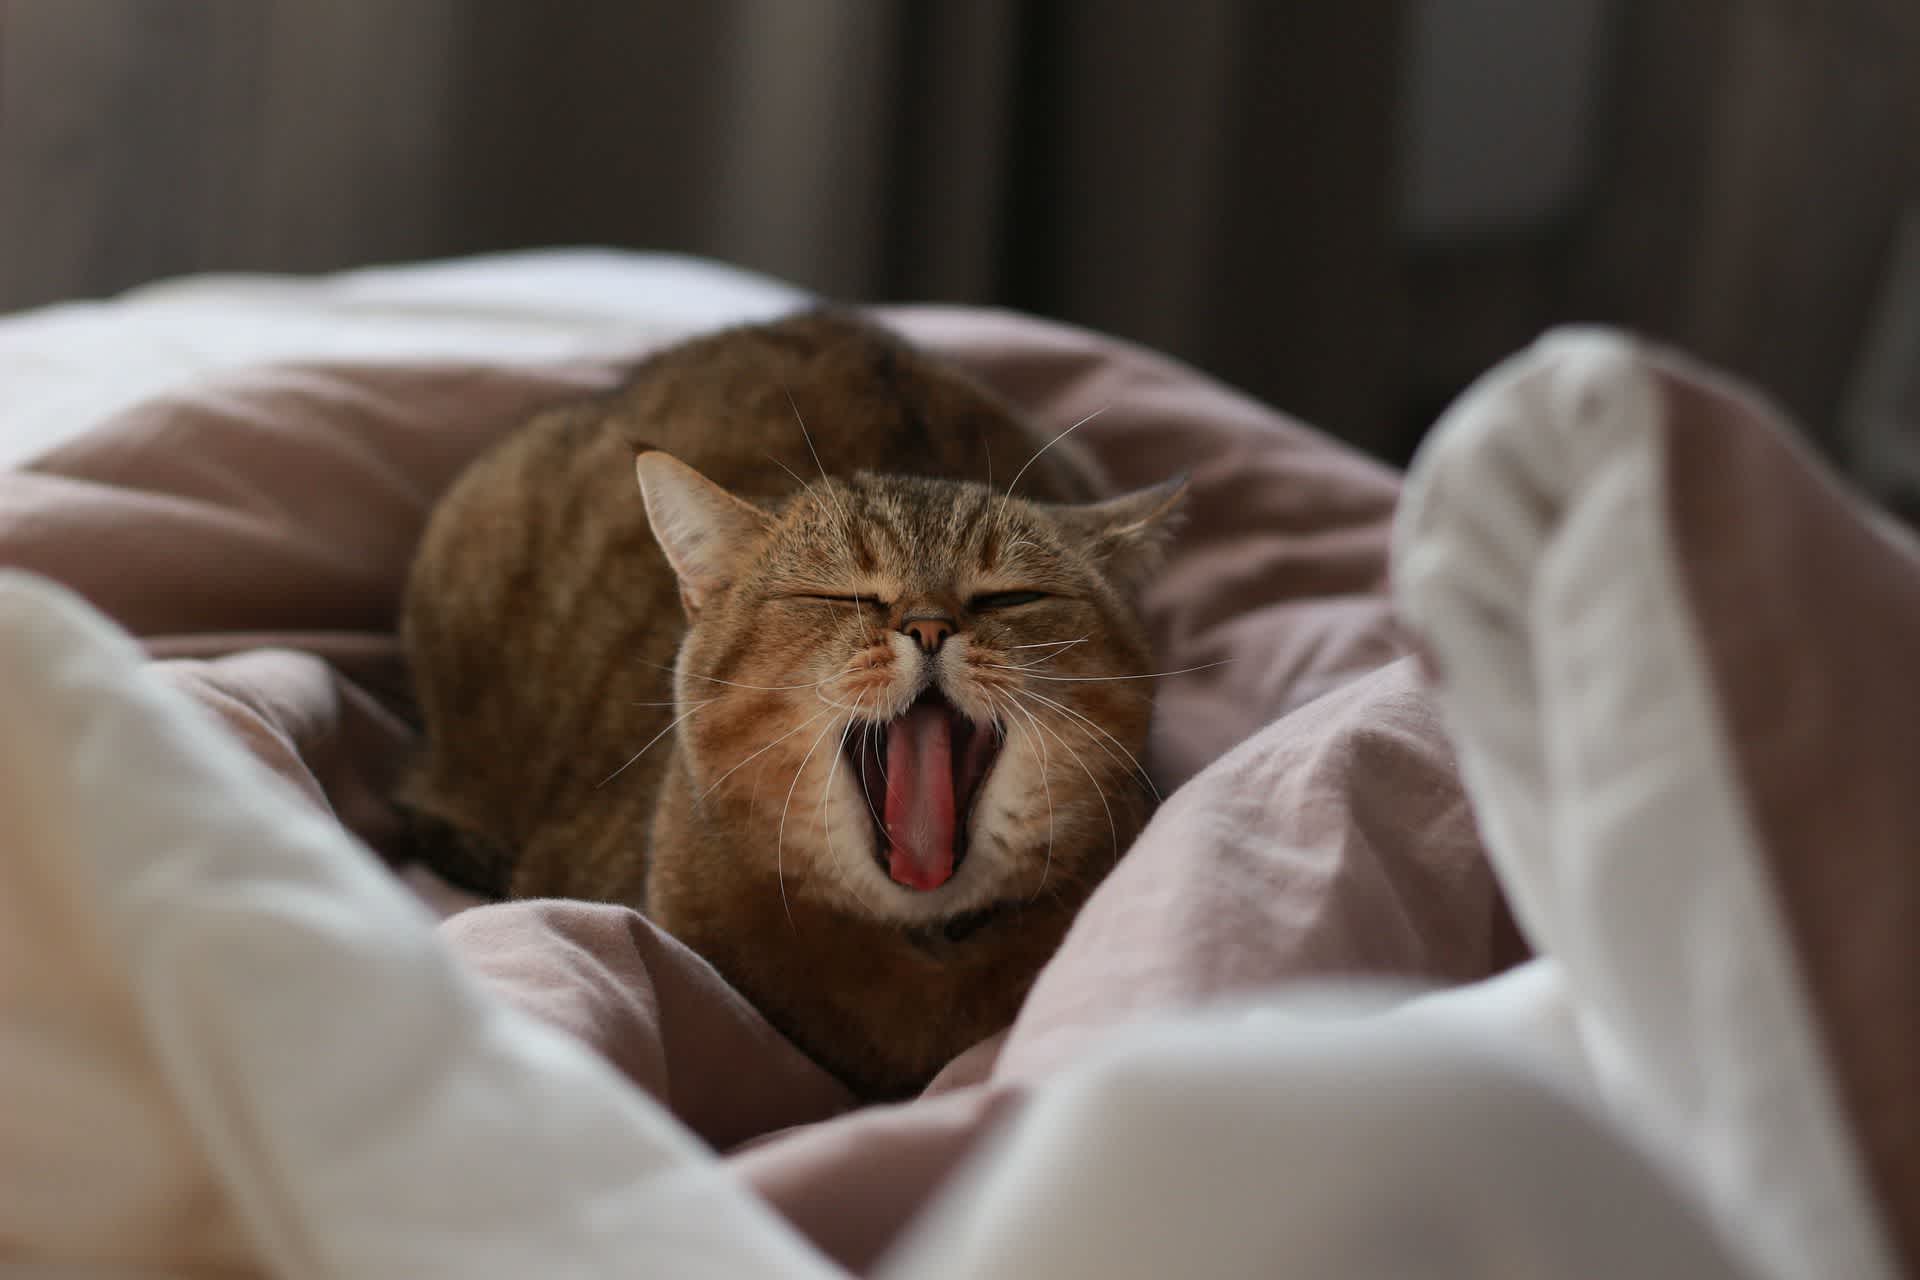 布団の上であくびをしている猫